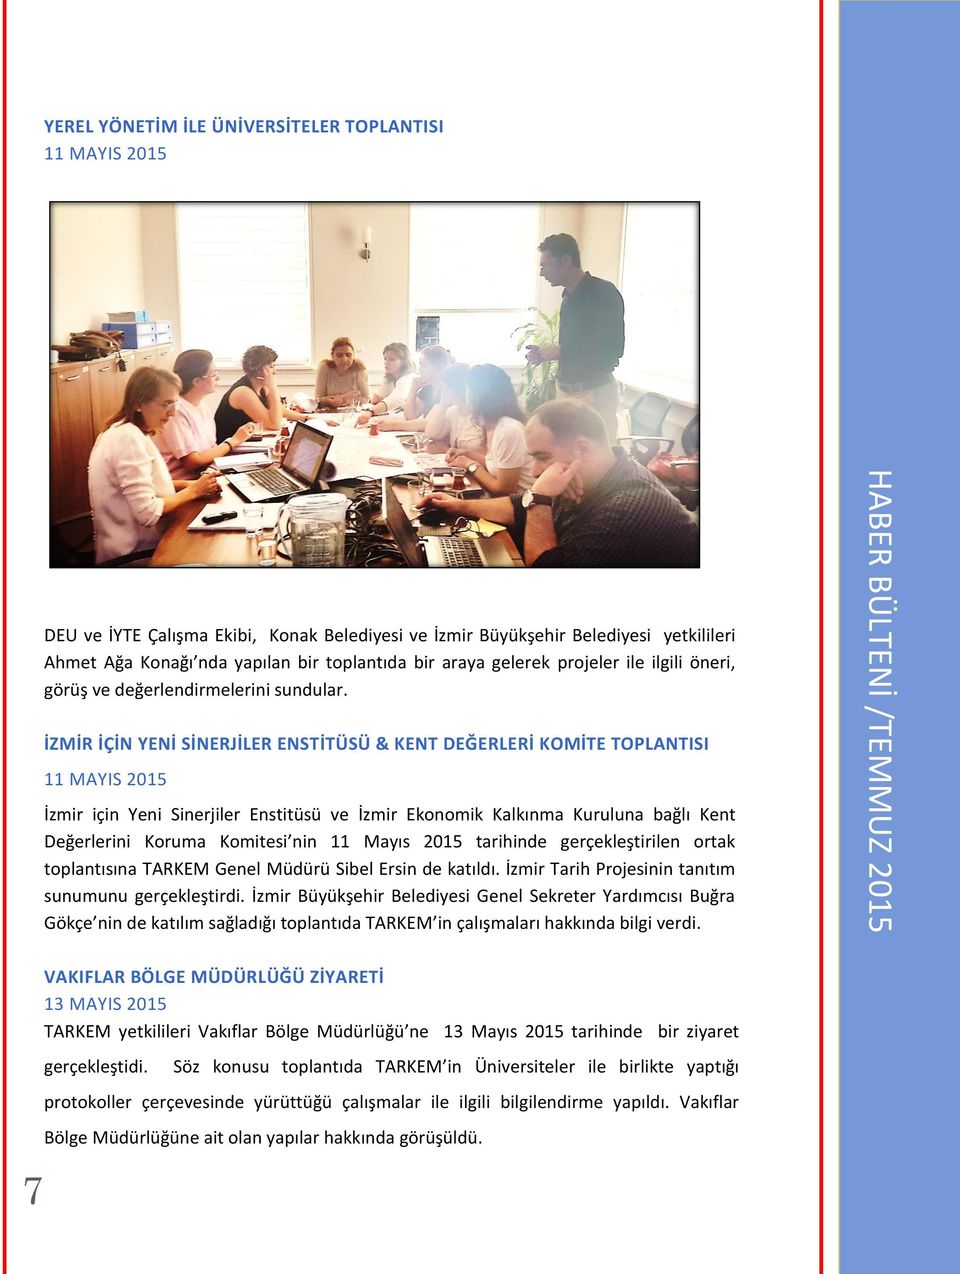 İZMİR İÇİN YENİ SİNERJİLER ENSTİTÜSÜ & KENT DEĞERLERİ KOMİTE TOPLANTISI 11 MAYIS 2015 İzmir için Yeni Sinerjiler Enstitüsü ve İzmir Ekonomik Kalkınma Kuruluna bağlı Kent Değerlerini Koruma Komitesi